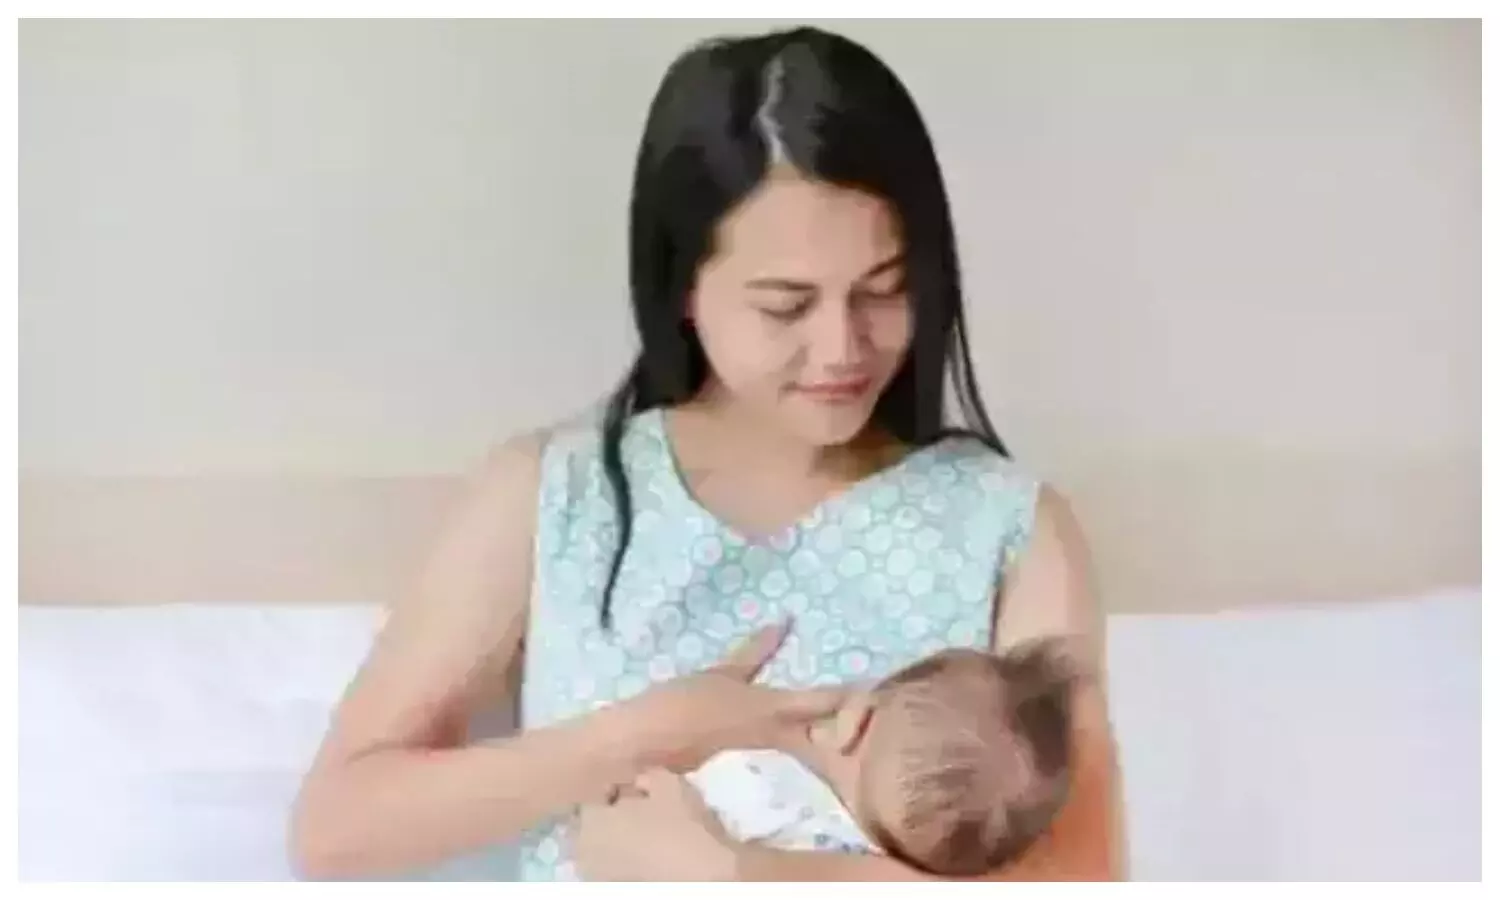 Breastfeeding week 2022